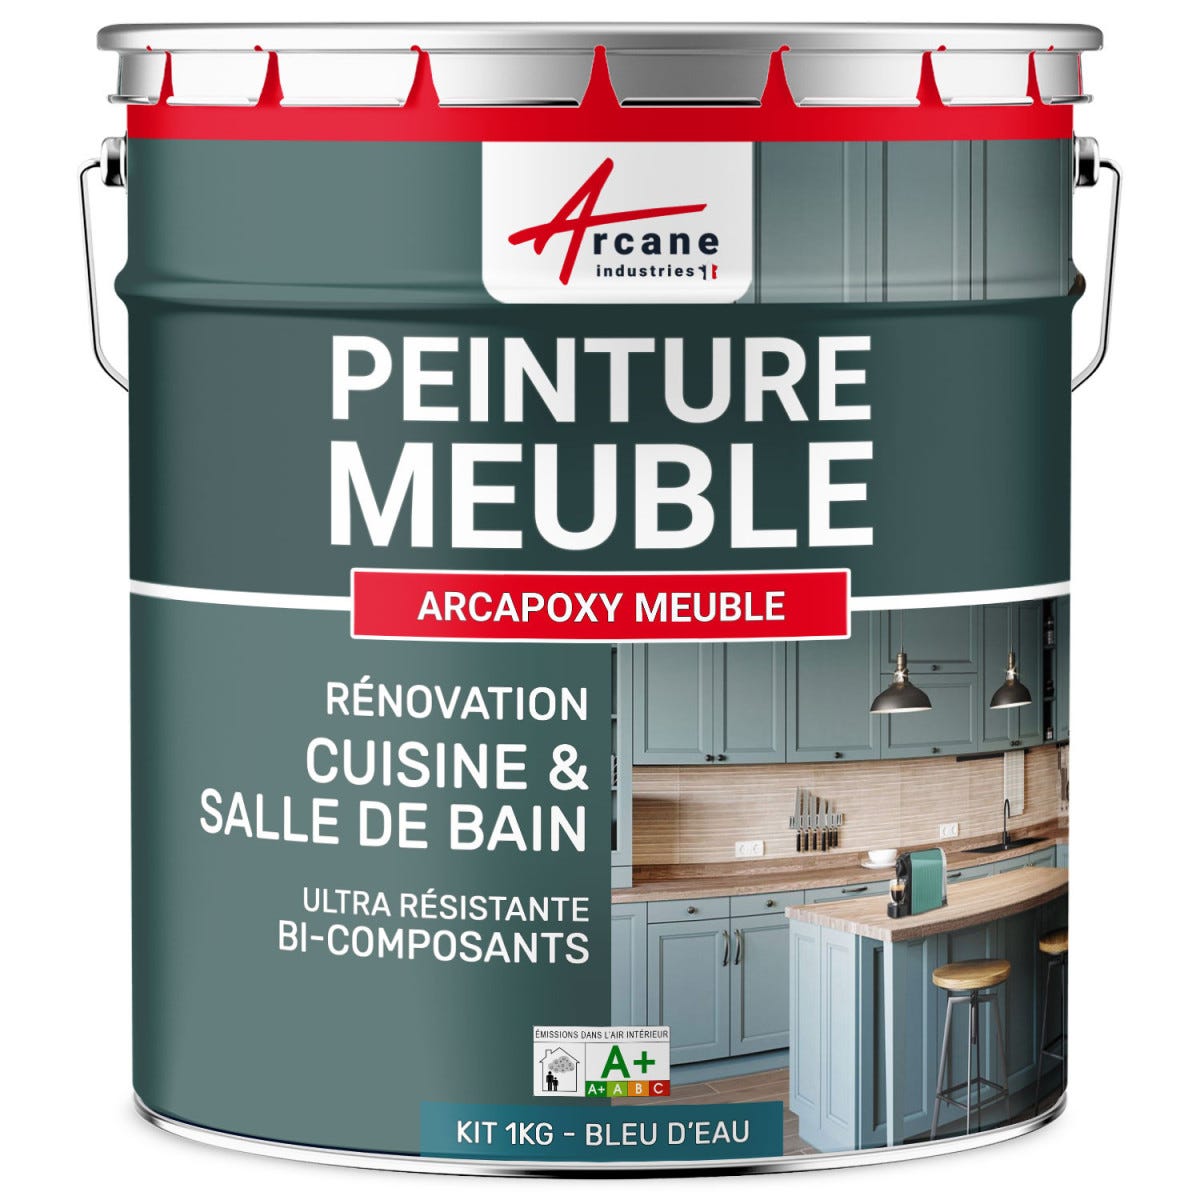 Peinture Meuble Cuisine, Salle de Bain - Résine ARCAPOXY MEUBLE - 1 kg (jusqu'à 12 m² en 2 couches) - Bleu D'eau - RAL 5021 - ARCANE INDUSTRIES 0